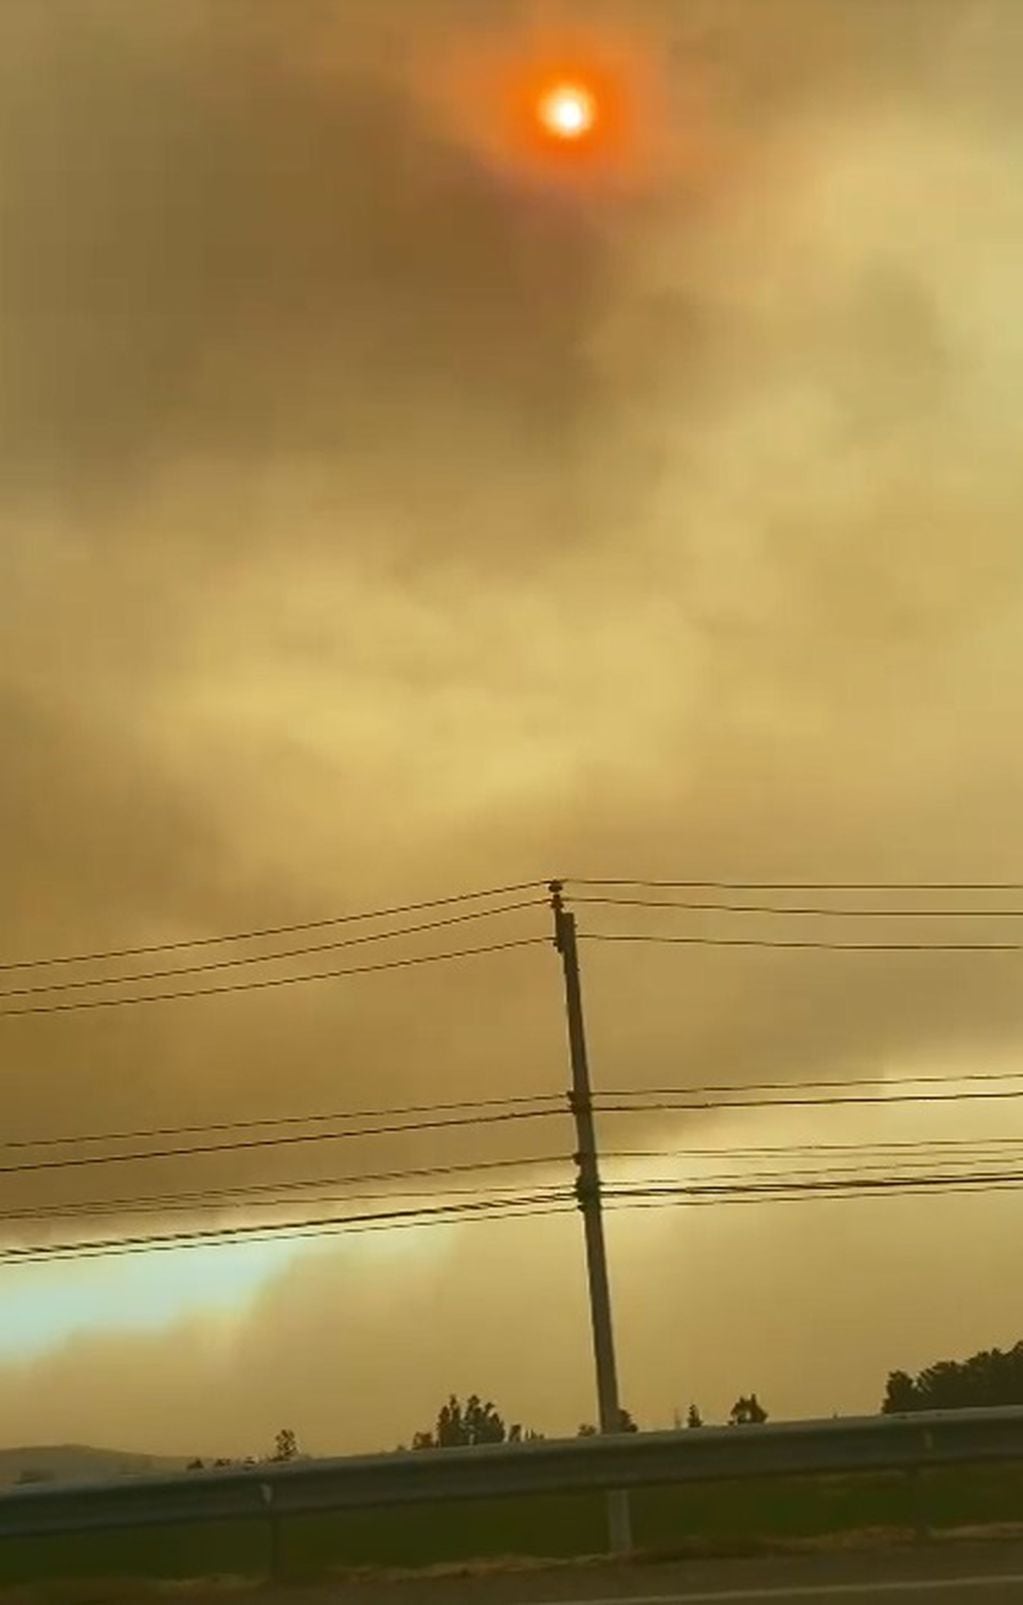 De a poco vuelve la calma a Viña del Mar tras los incendios: fotos y videos de las escenas “apocalípticas”. Foto: Gentileza Mariano Meneo